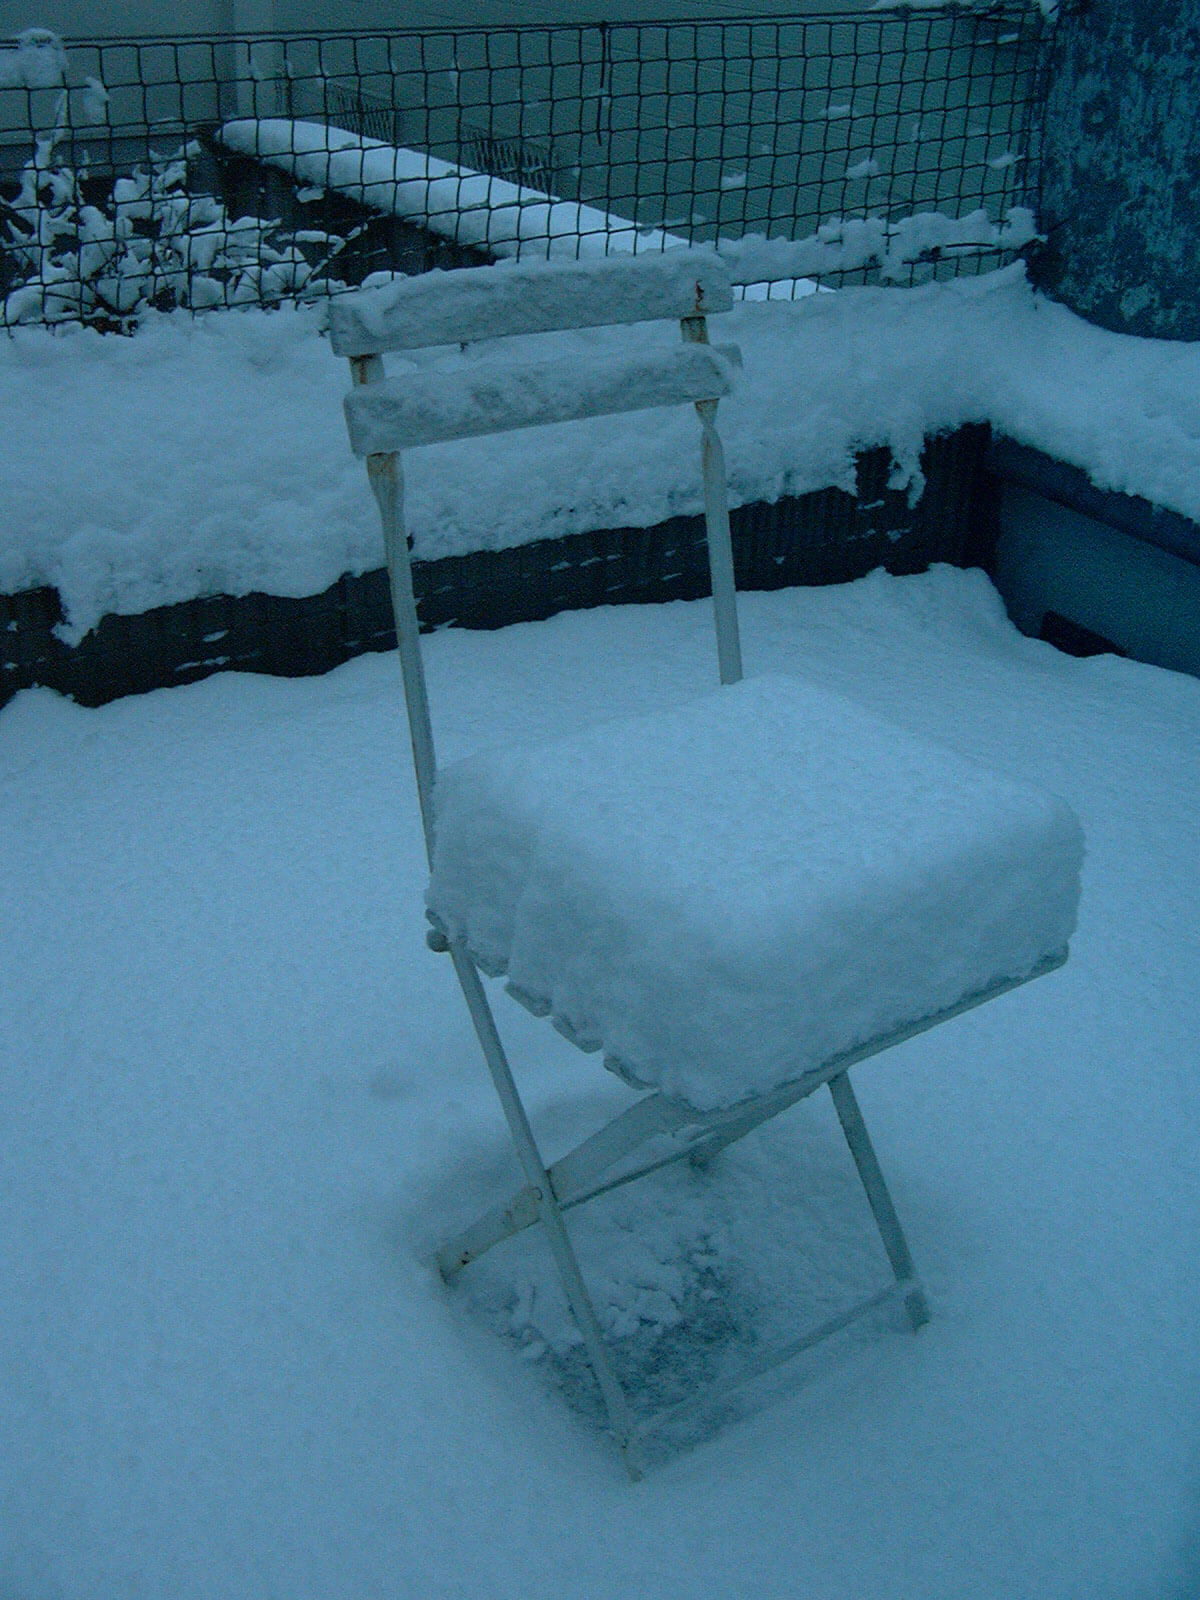 積もった雪が厚いクッションのように見える、雪が積もった庭に置いてある椅子